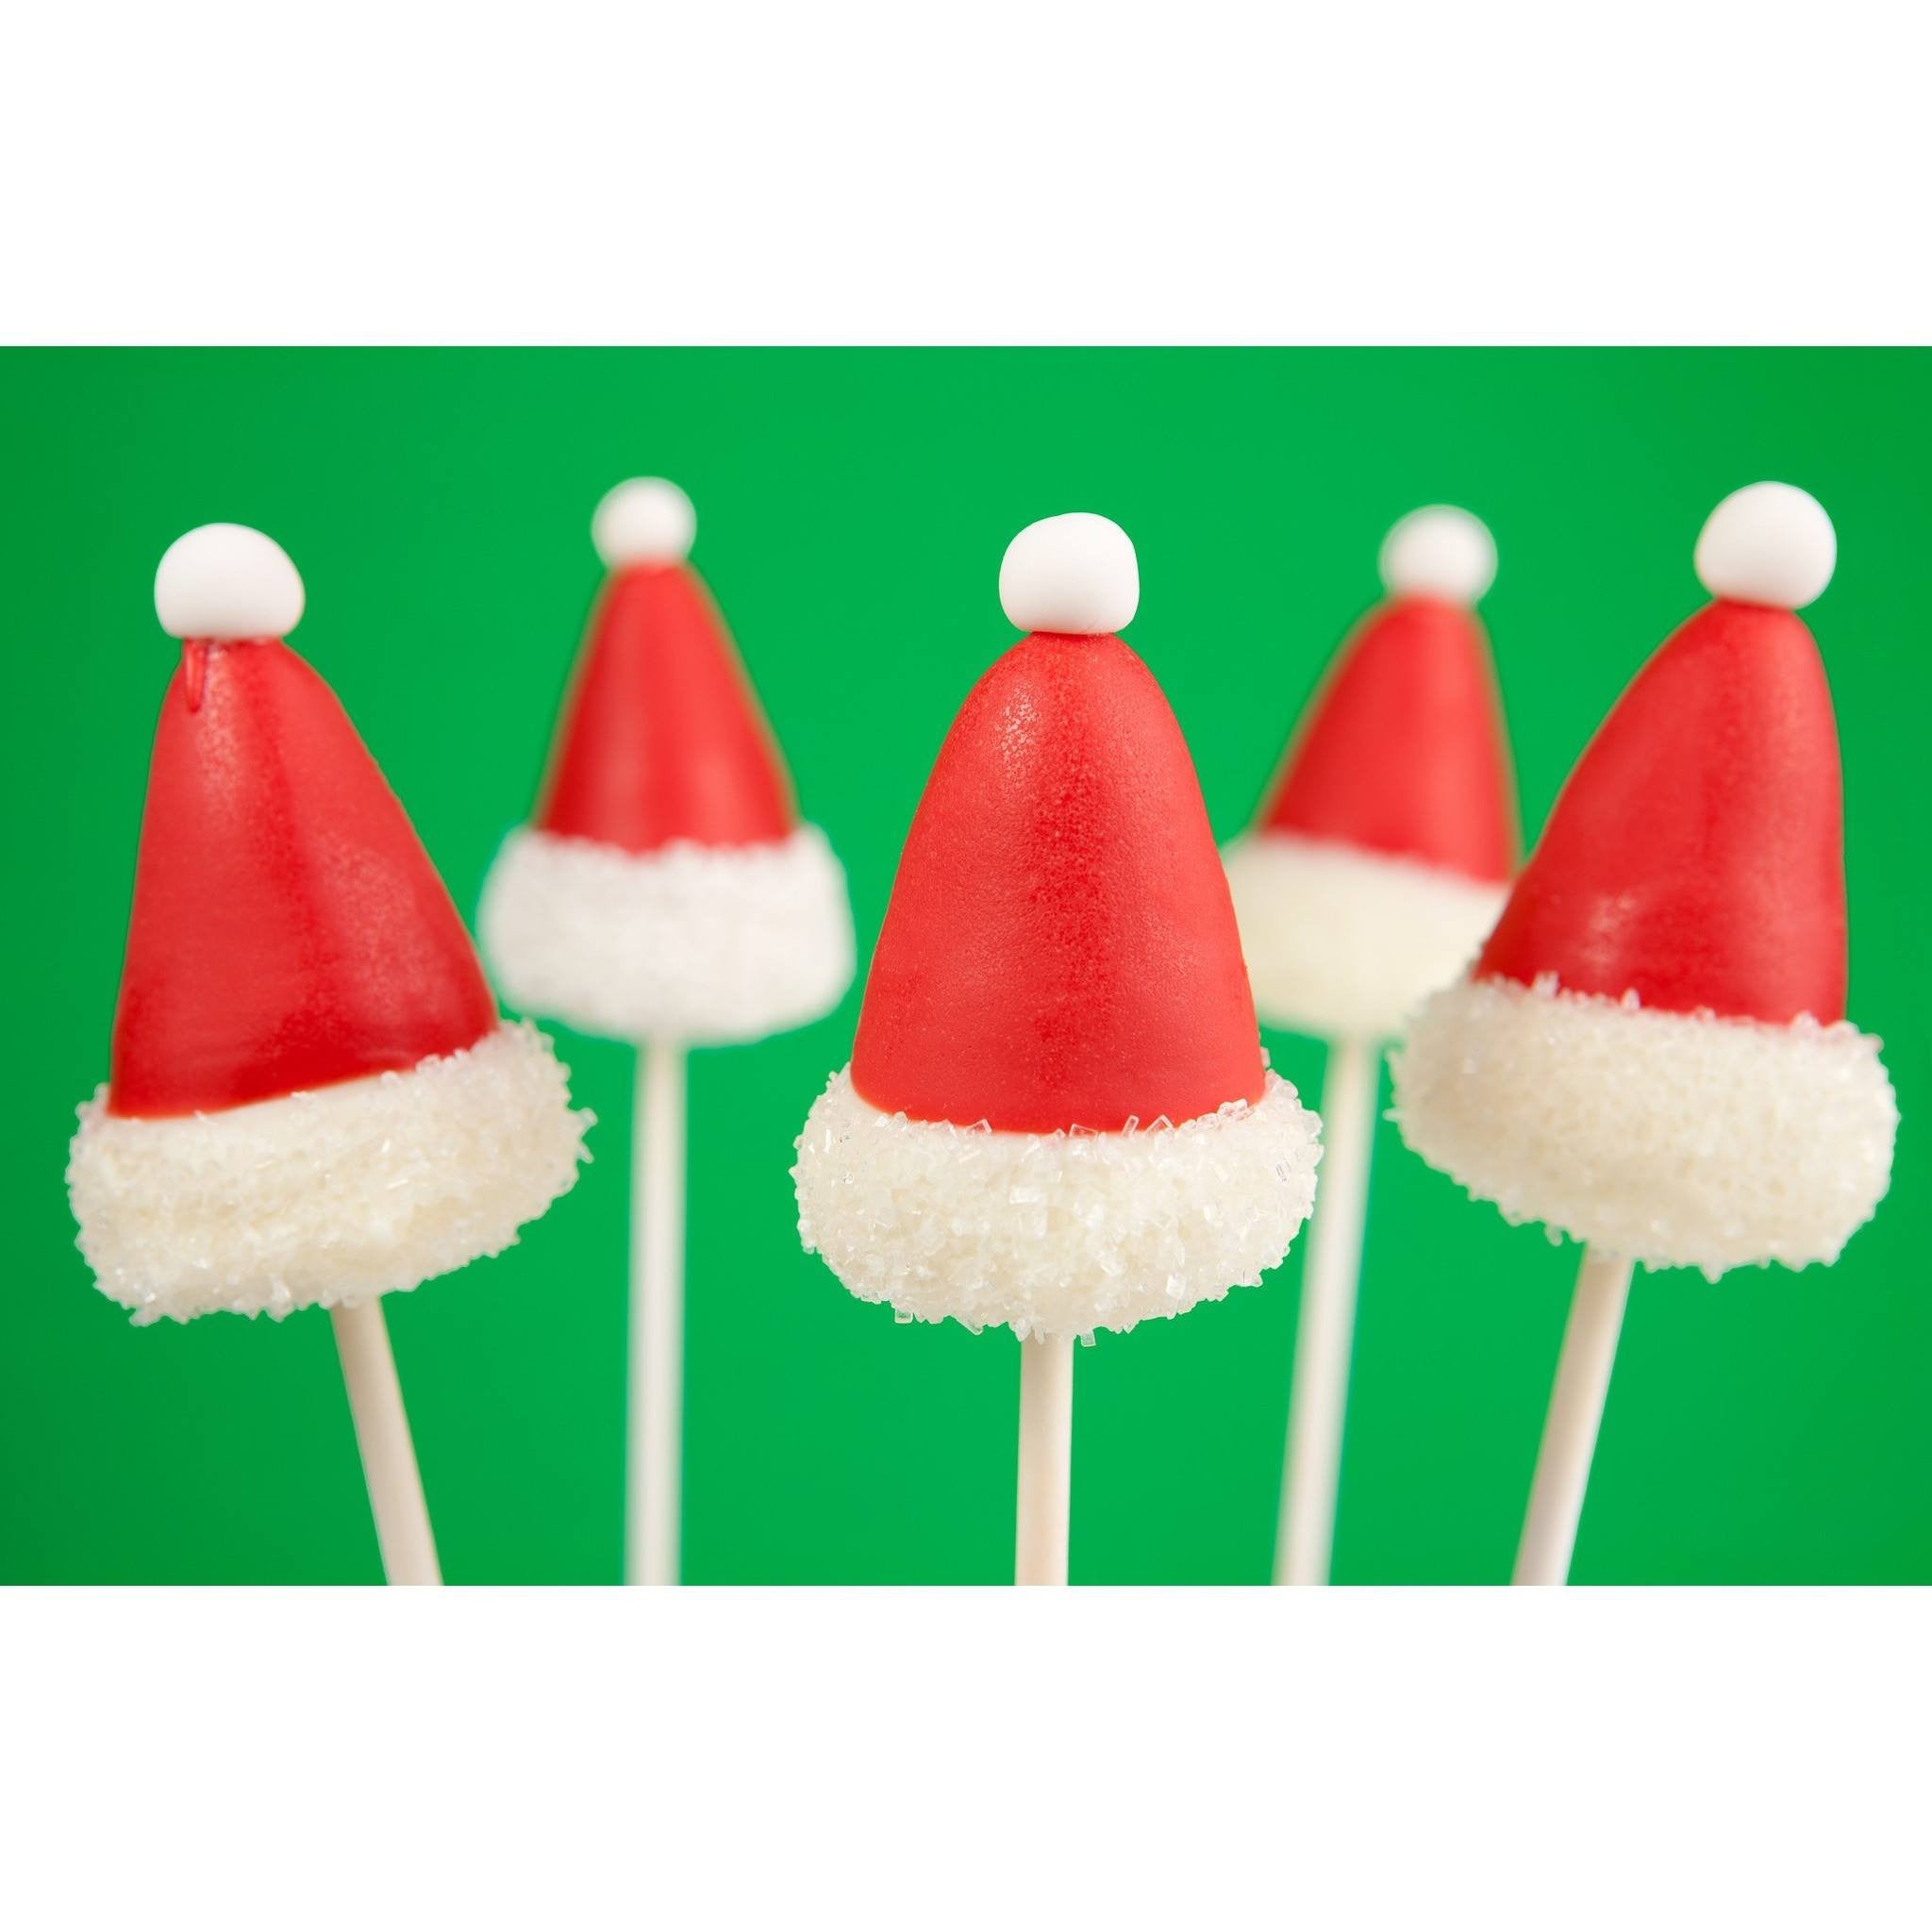 Santa cookies on sticks recipe: Food